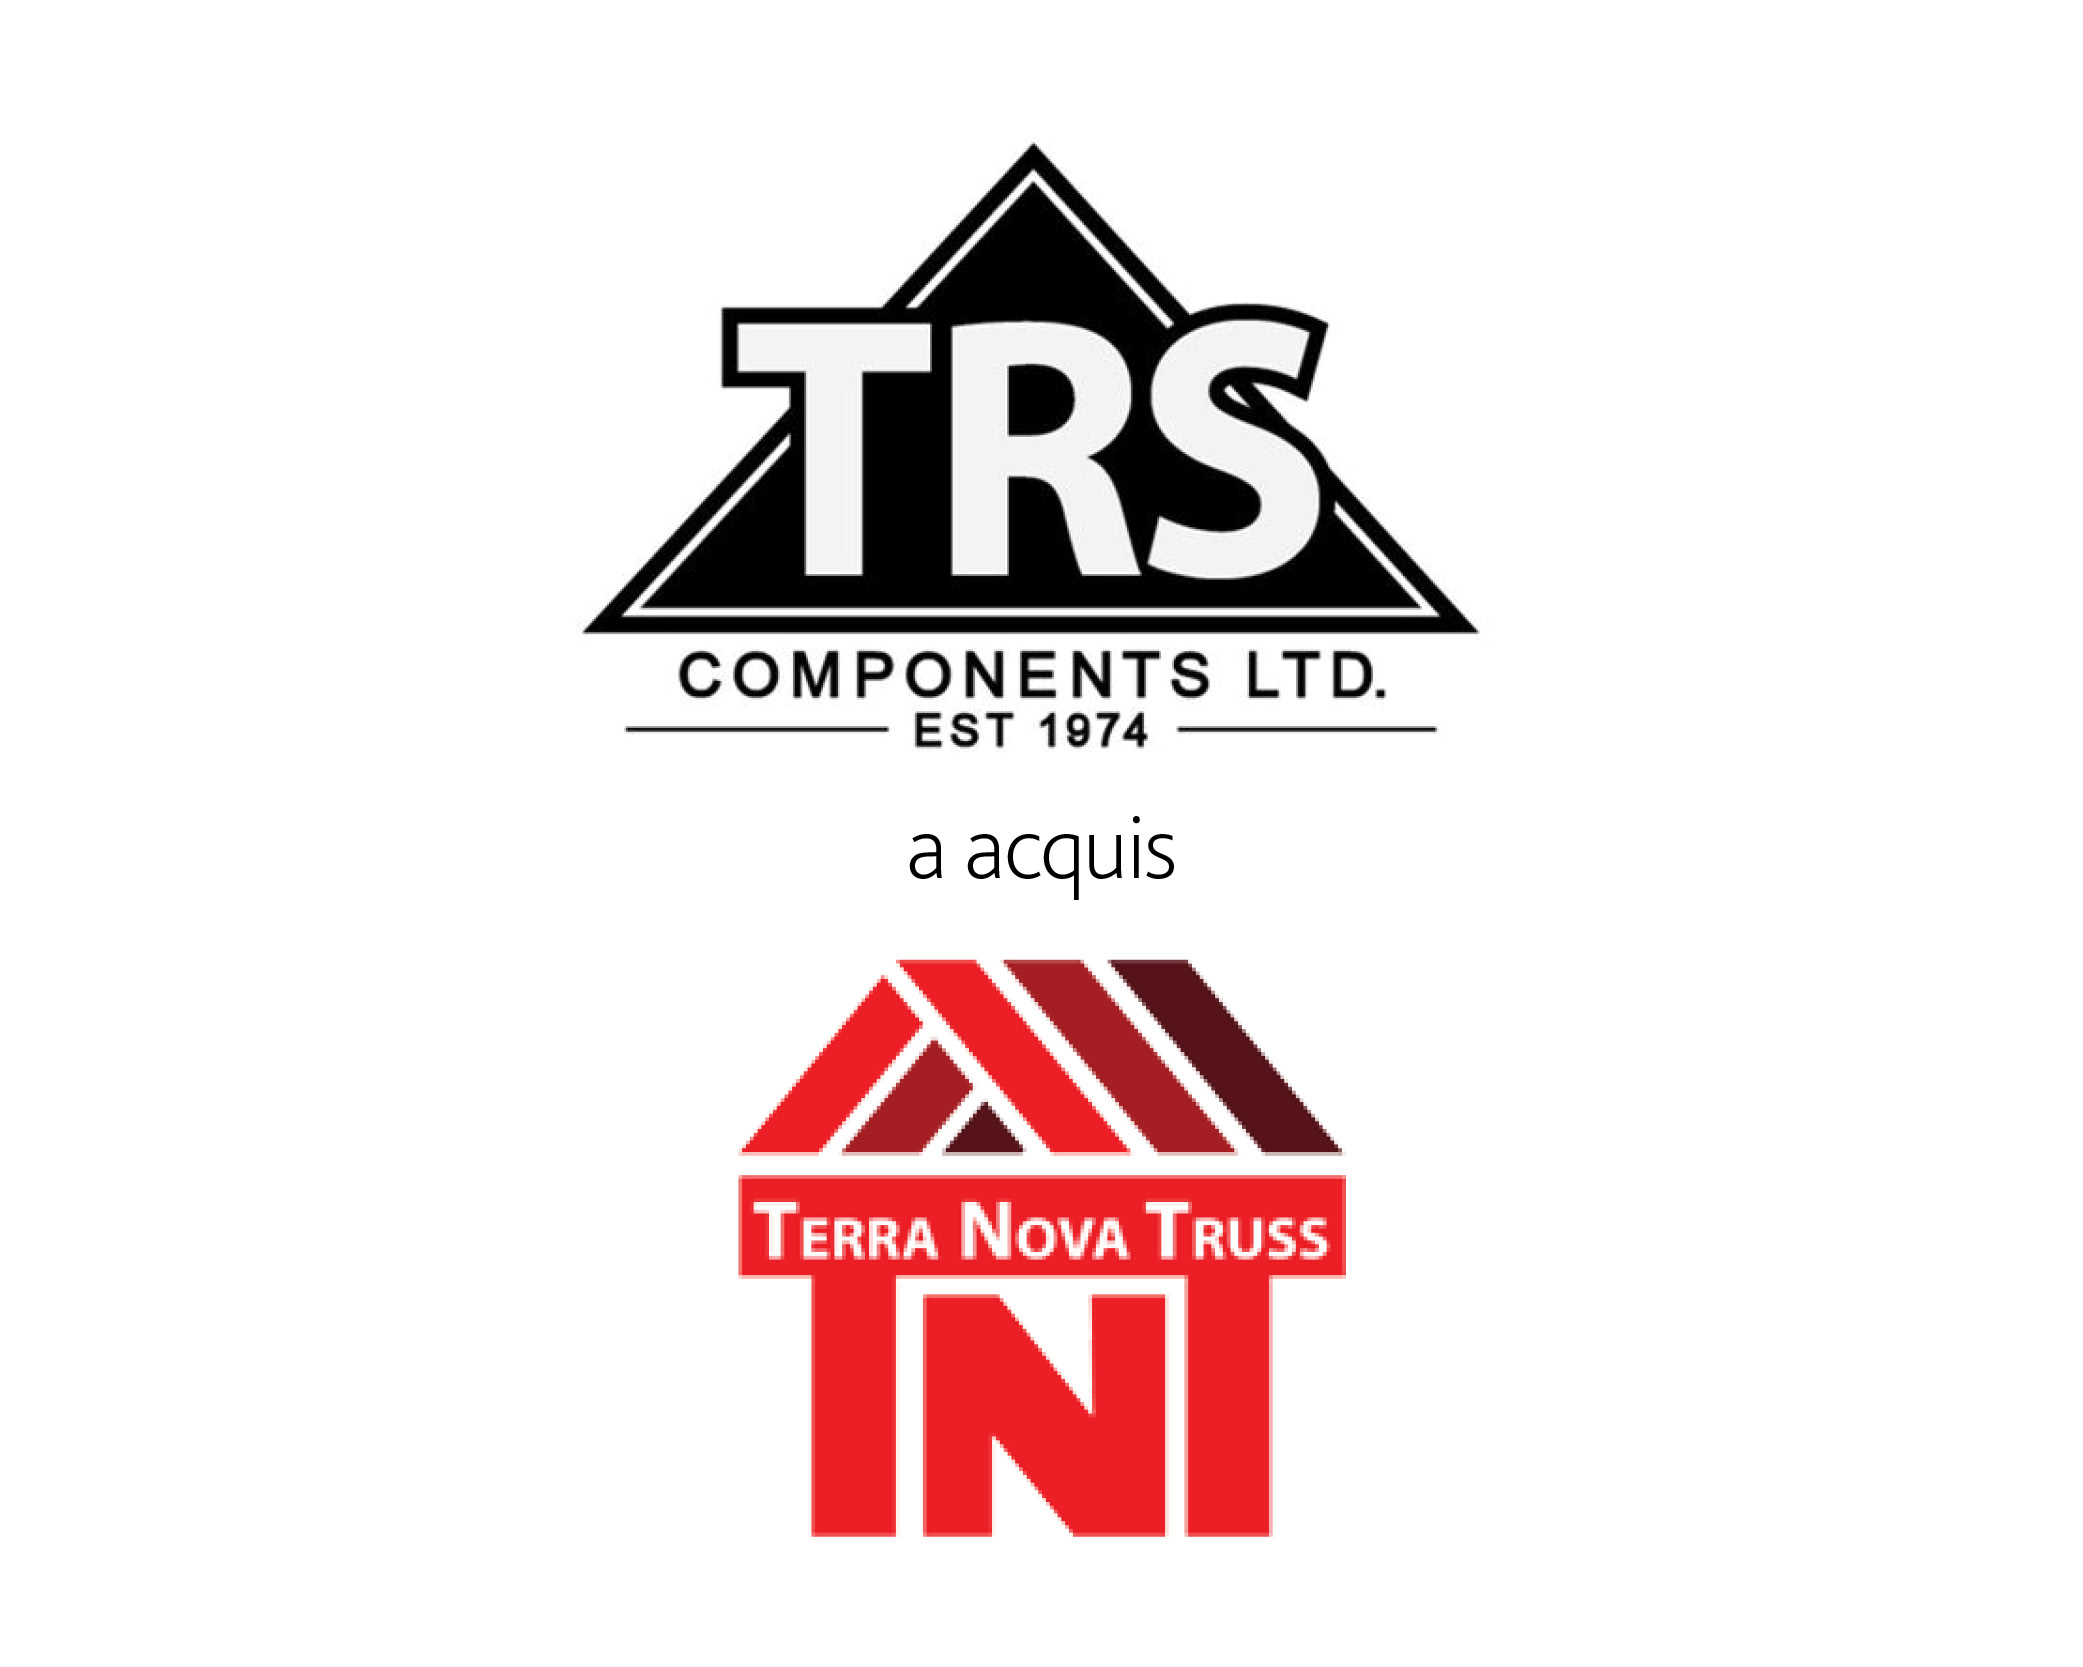 Logos Terranova et TRS